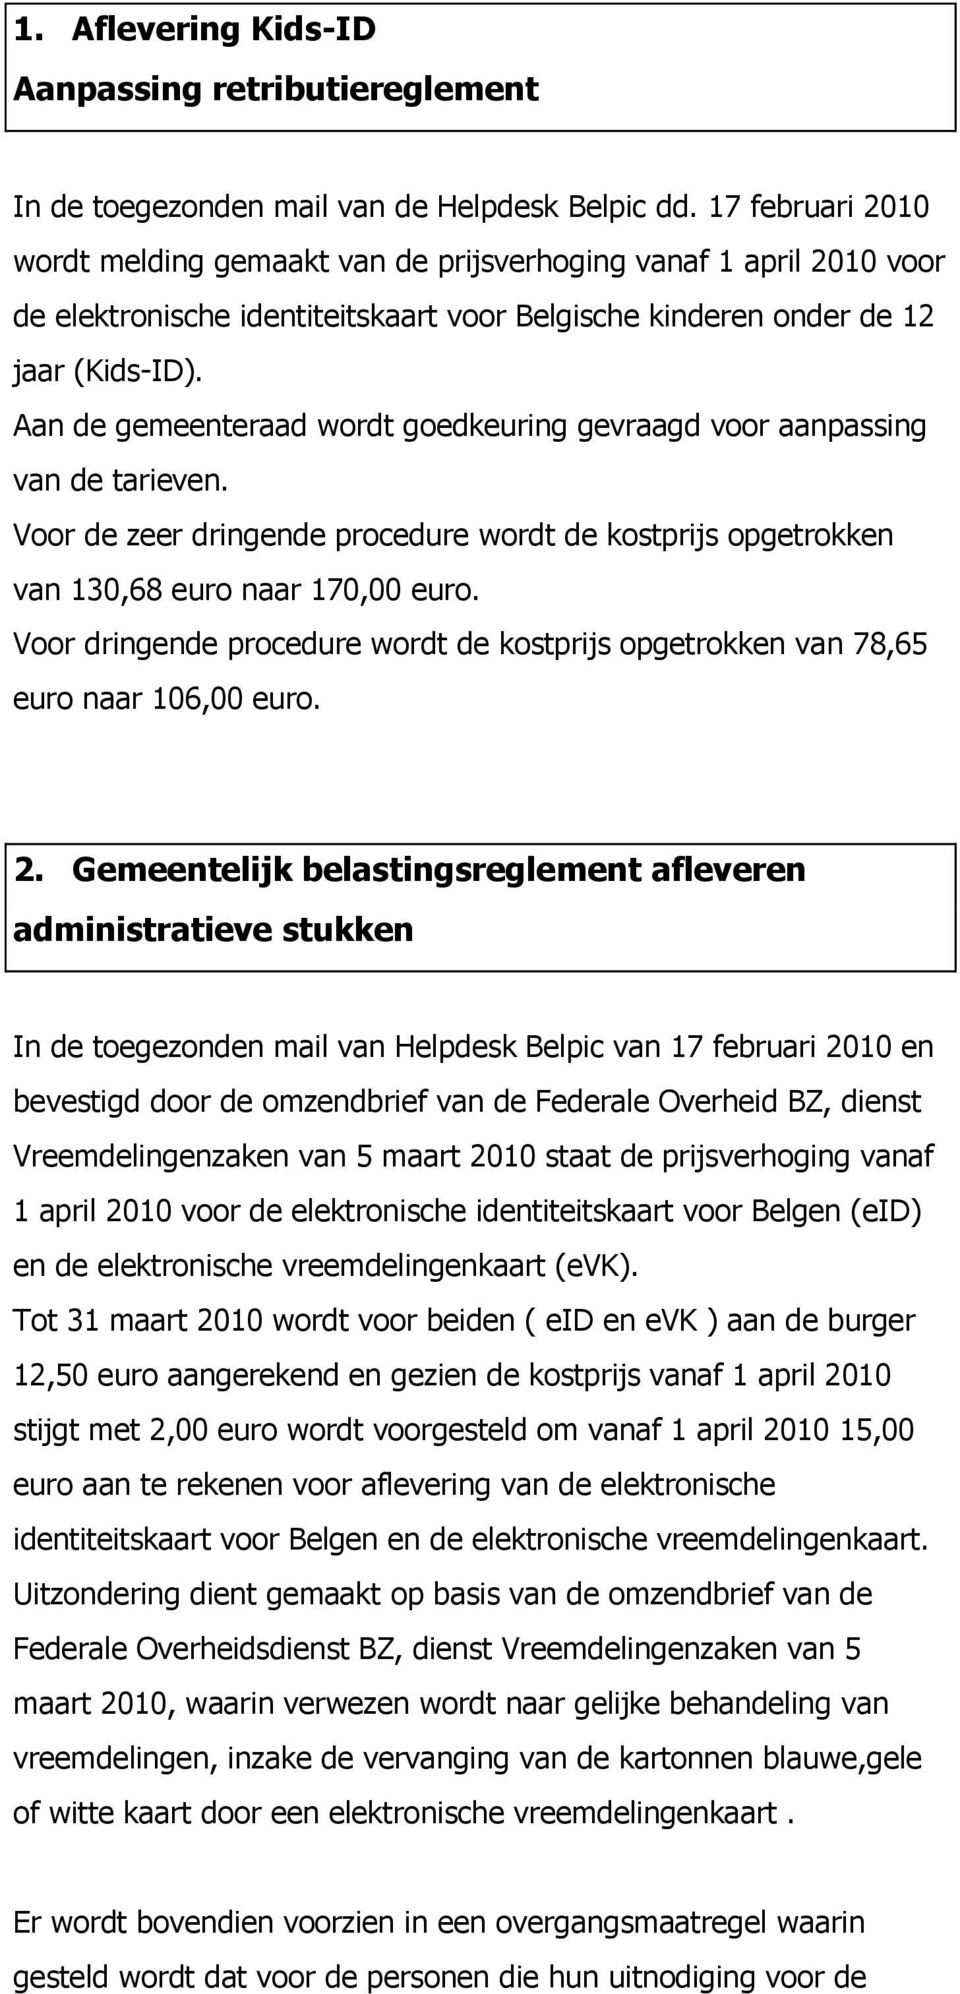 Aan de gemeenteraad wordt goedkeuring gevraagd voor aanpassing van de tarieven. Voor de zeer dringende procedure wordt de kostprijs opgetrokken van 130,68 euro naar 170,00 euro.